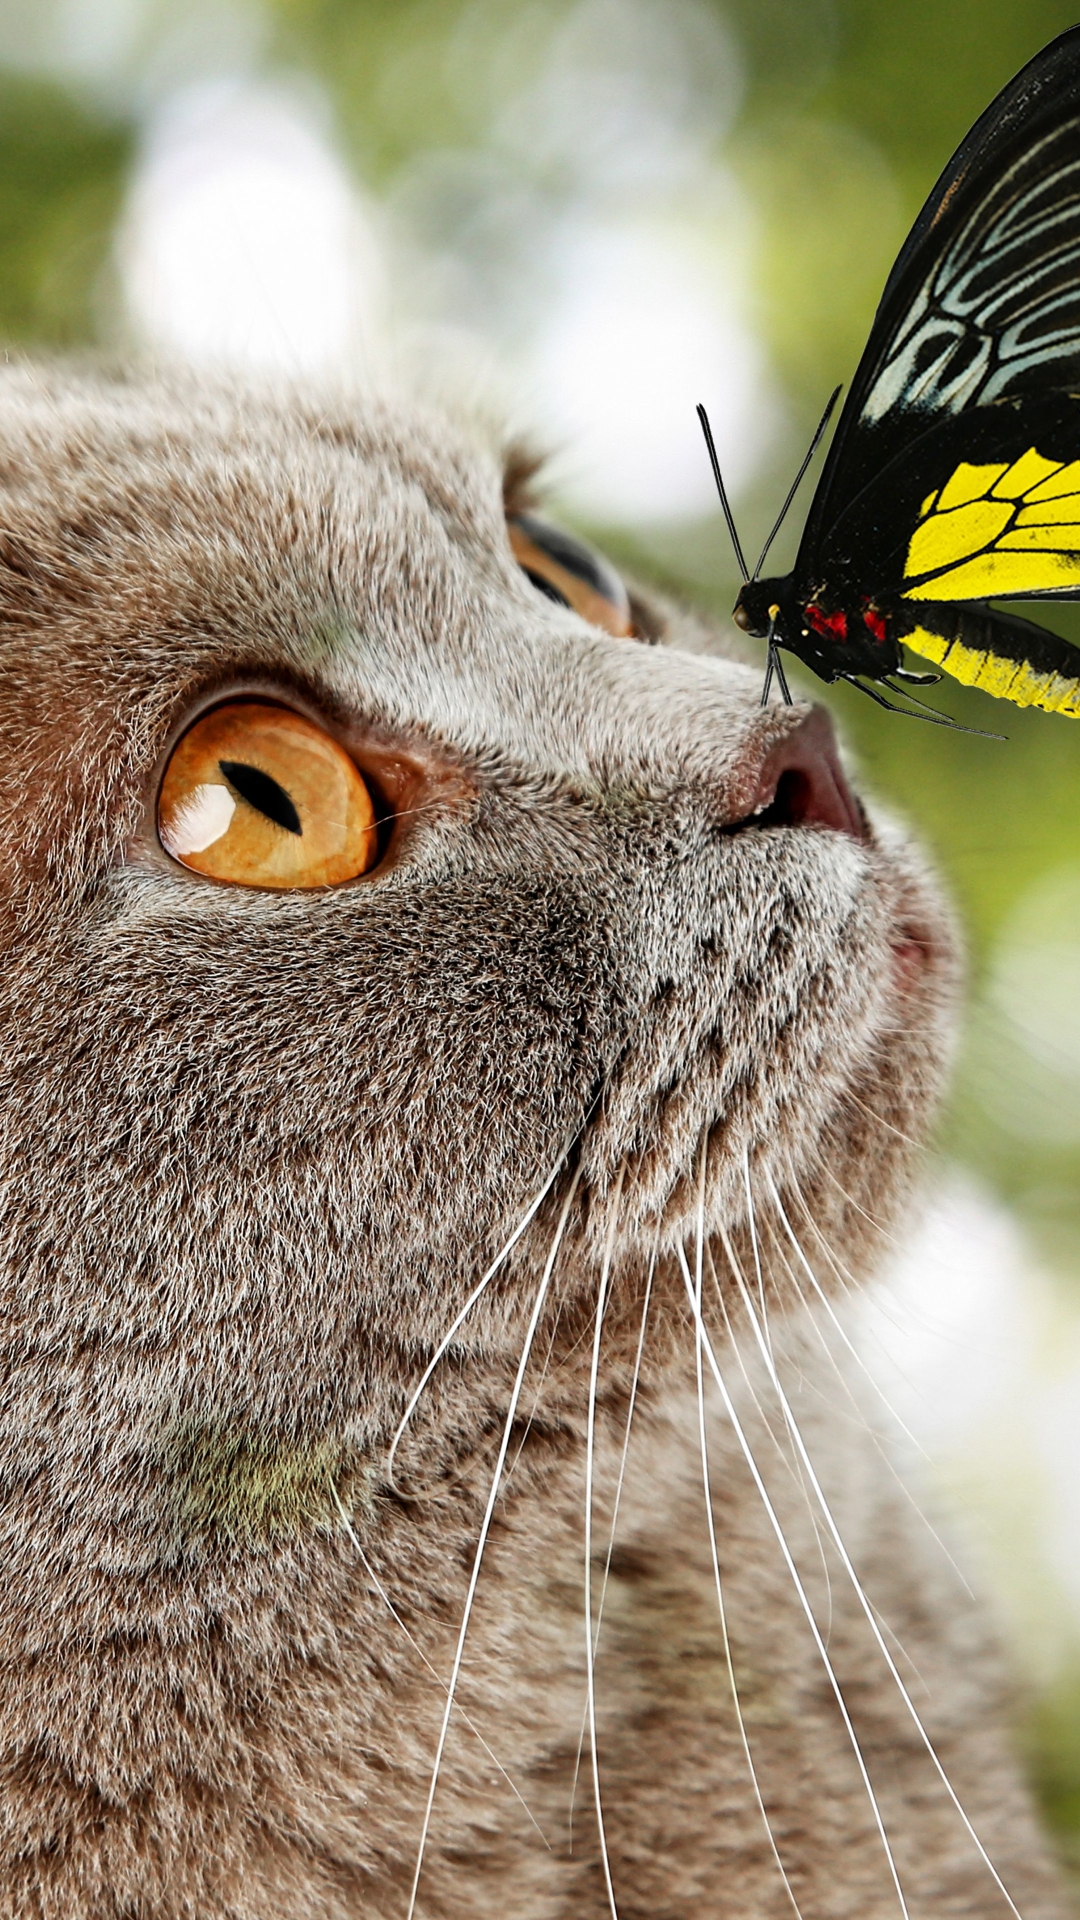 Descarga gratuita de fondo de pantalla para móvil de Animales, Gatos, Gato, Mariposa.